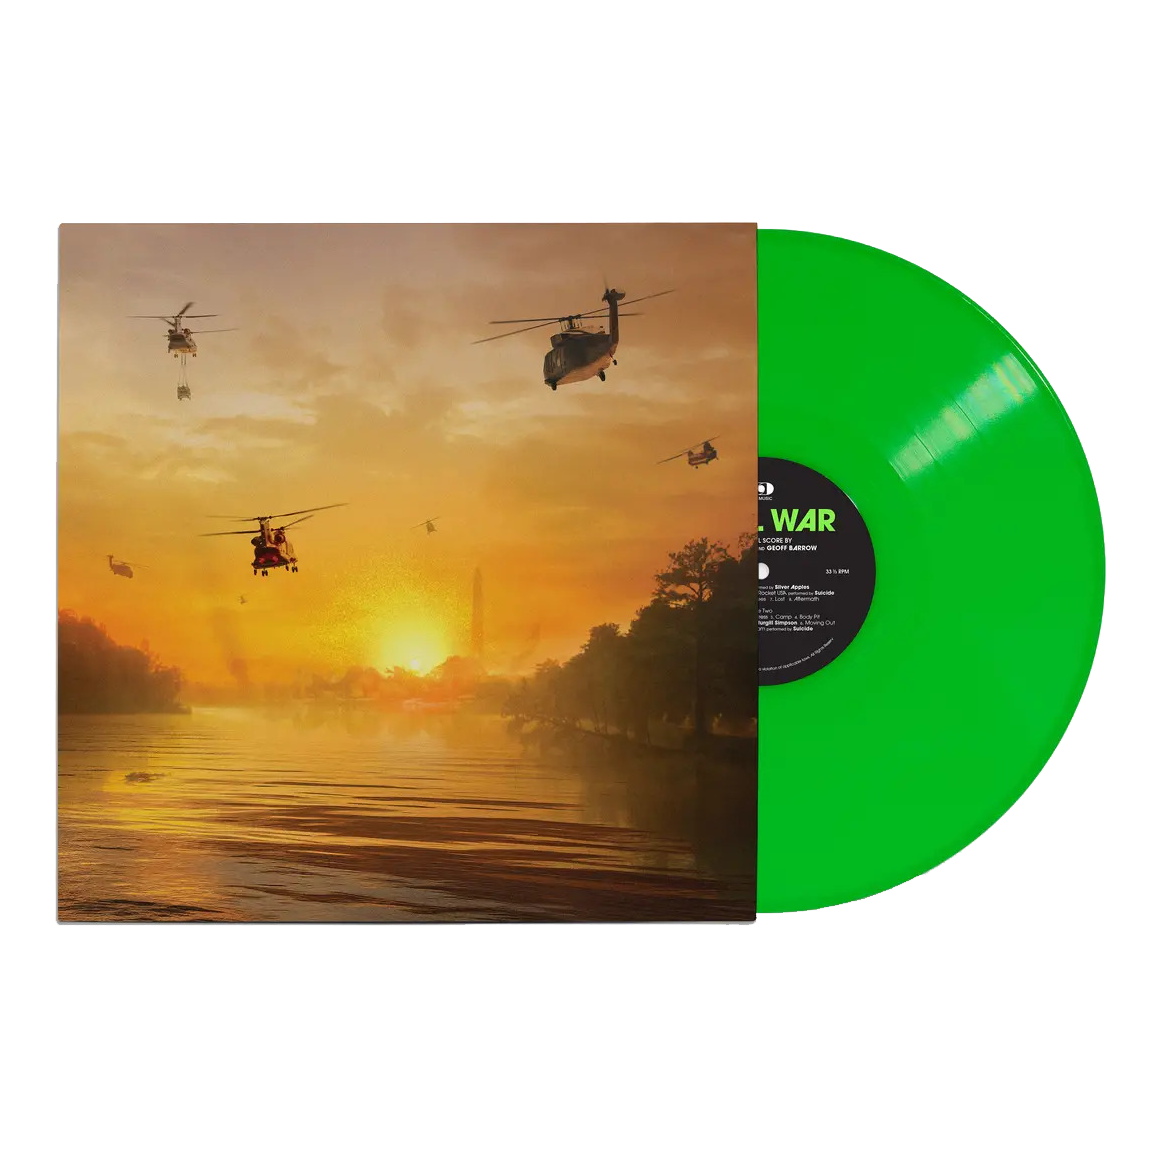 Ben Salisbury, Geoff Barrow - Civil War (Original Score): Limited Neon Green Vinyl LP